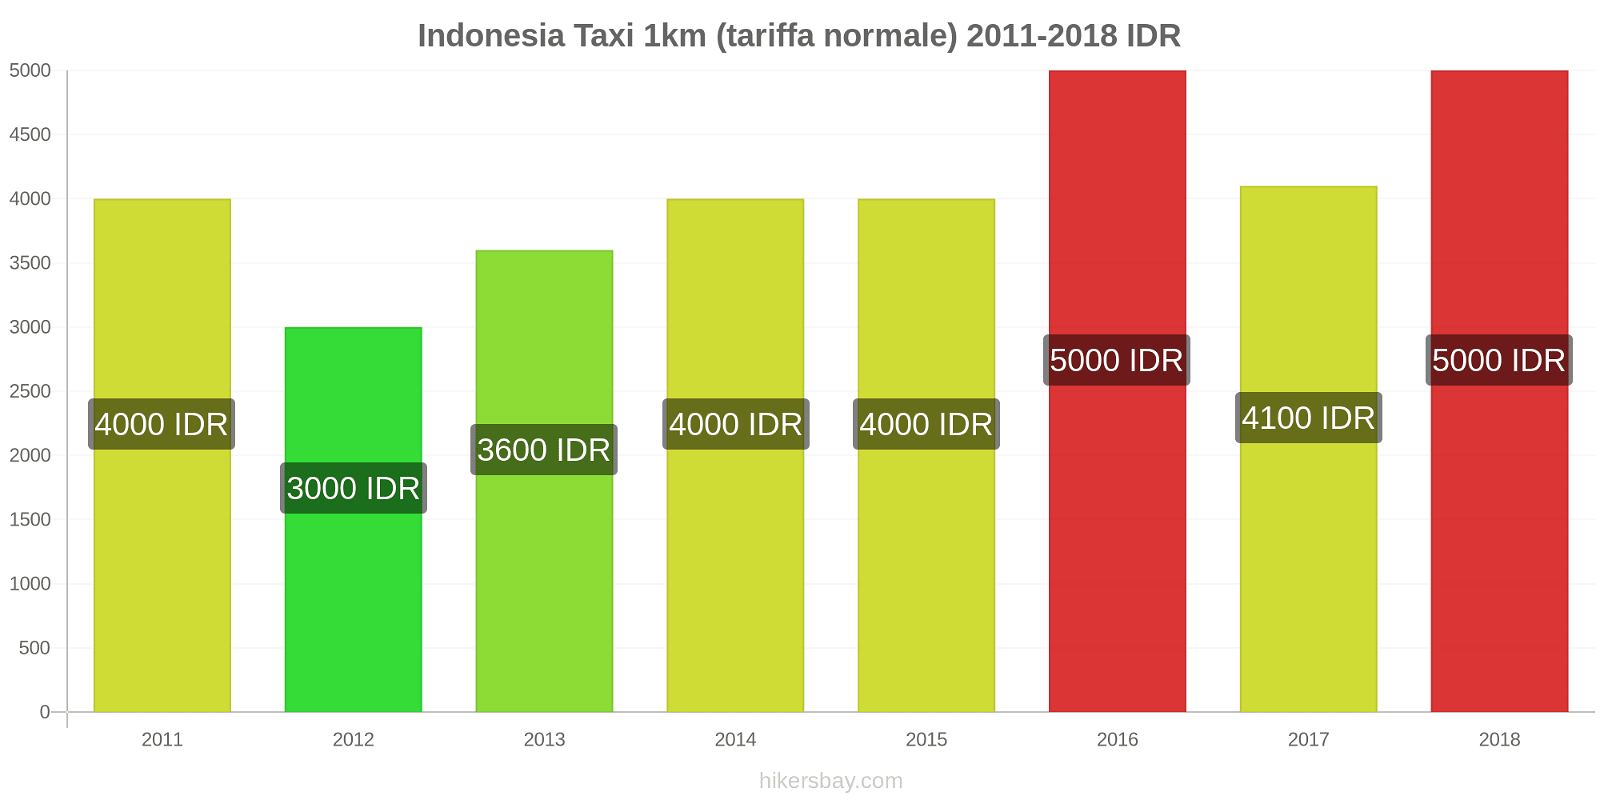 Indonesia cambi di prezzo Taxi 1km (tariffa normale) hikersbay.com